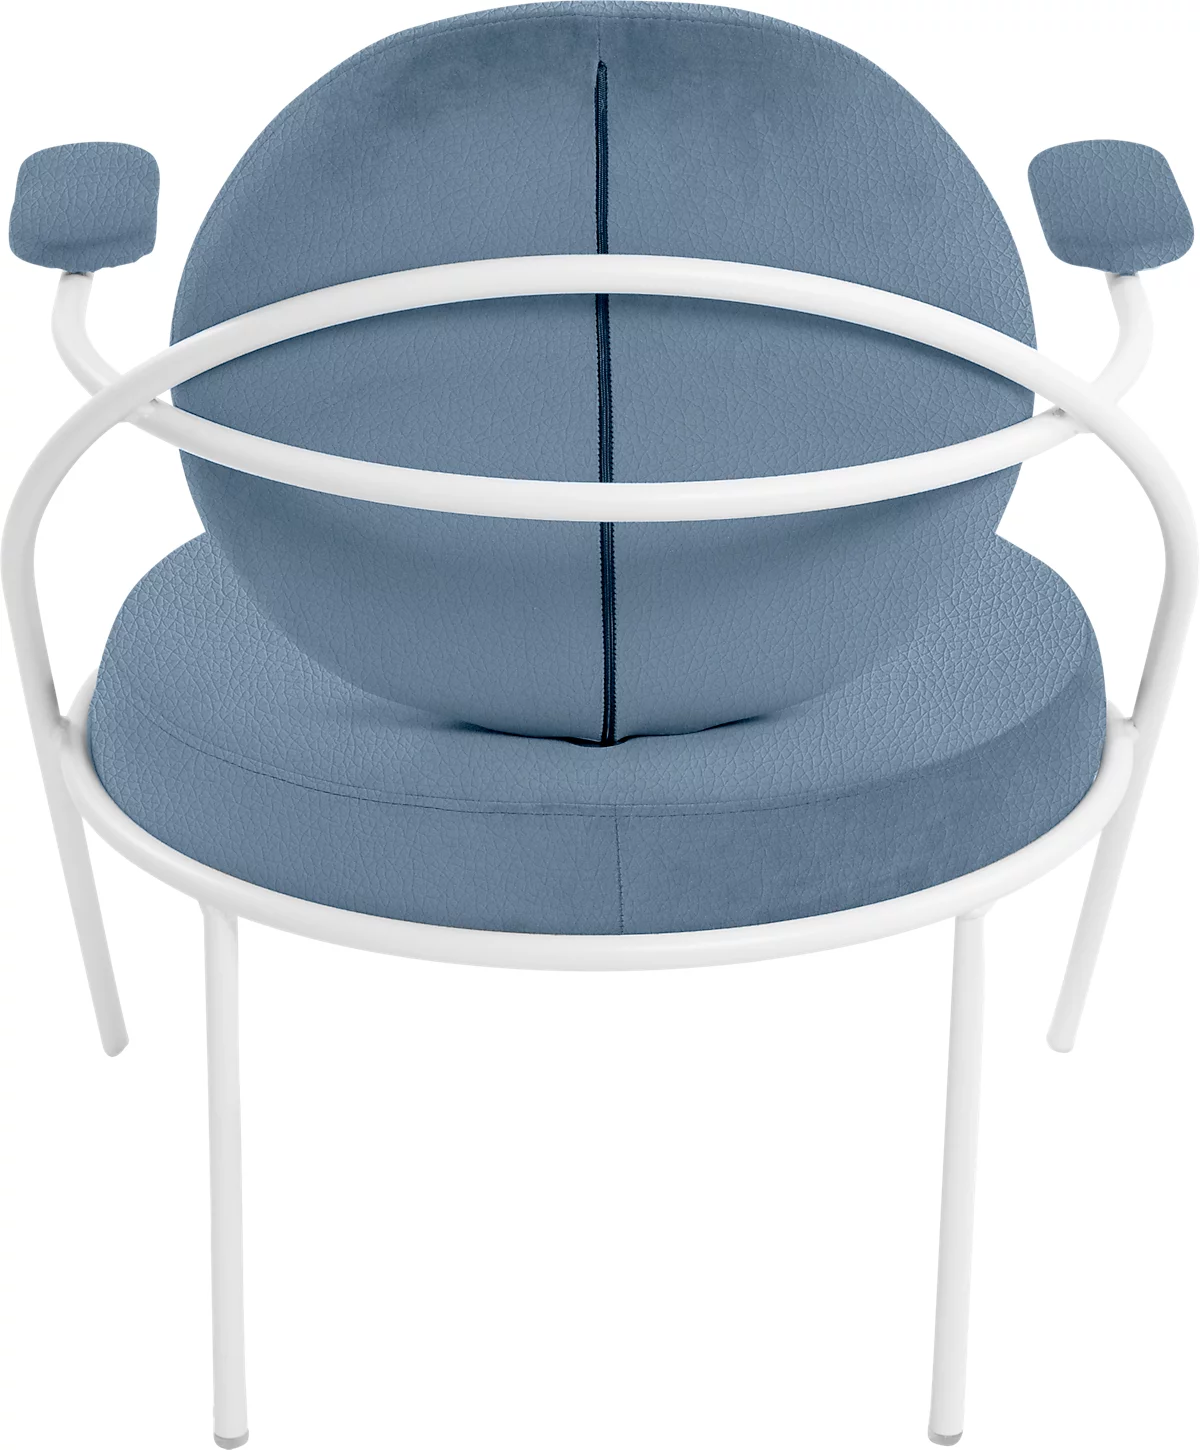 Sessel Meet by Paperflow Saturne, mit Armlehnen, B 700 x T 730 x H 880 mm, Stahlrohr, Kunstleder, Weiß/Blau